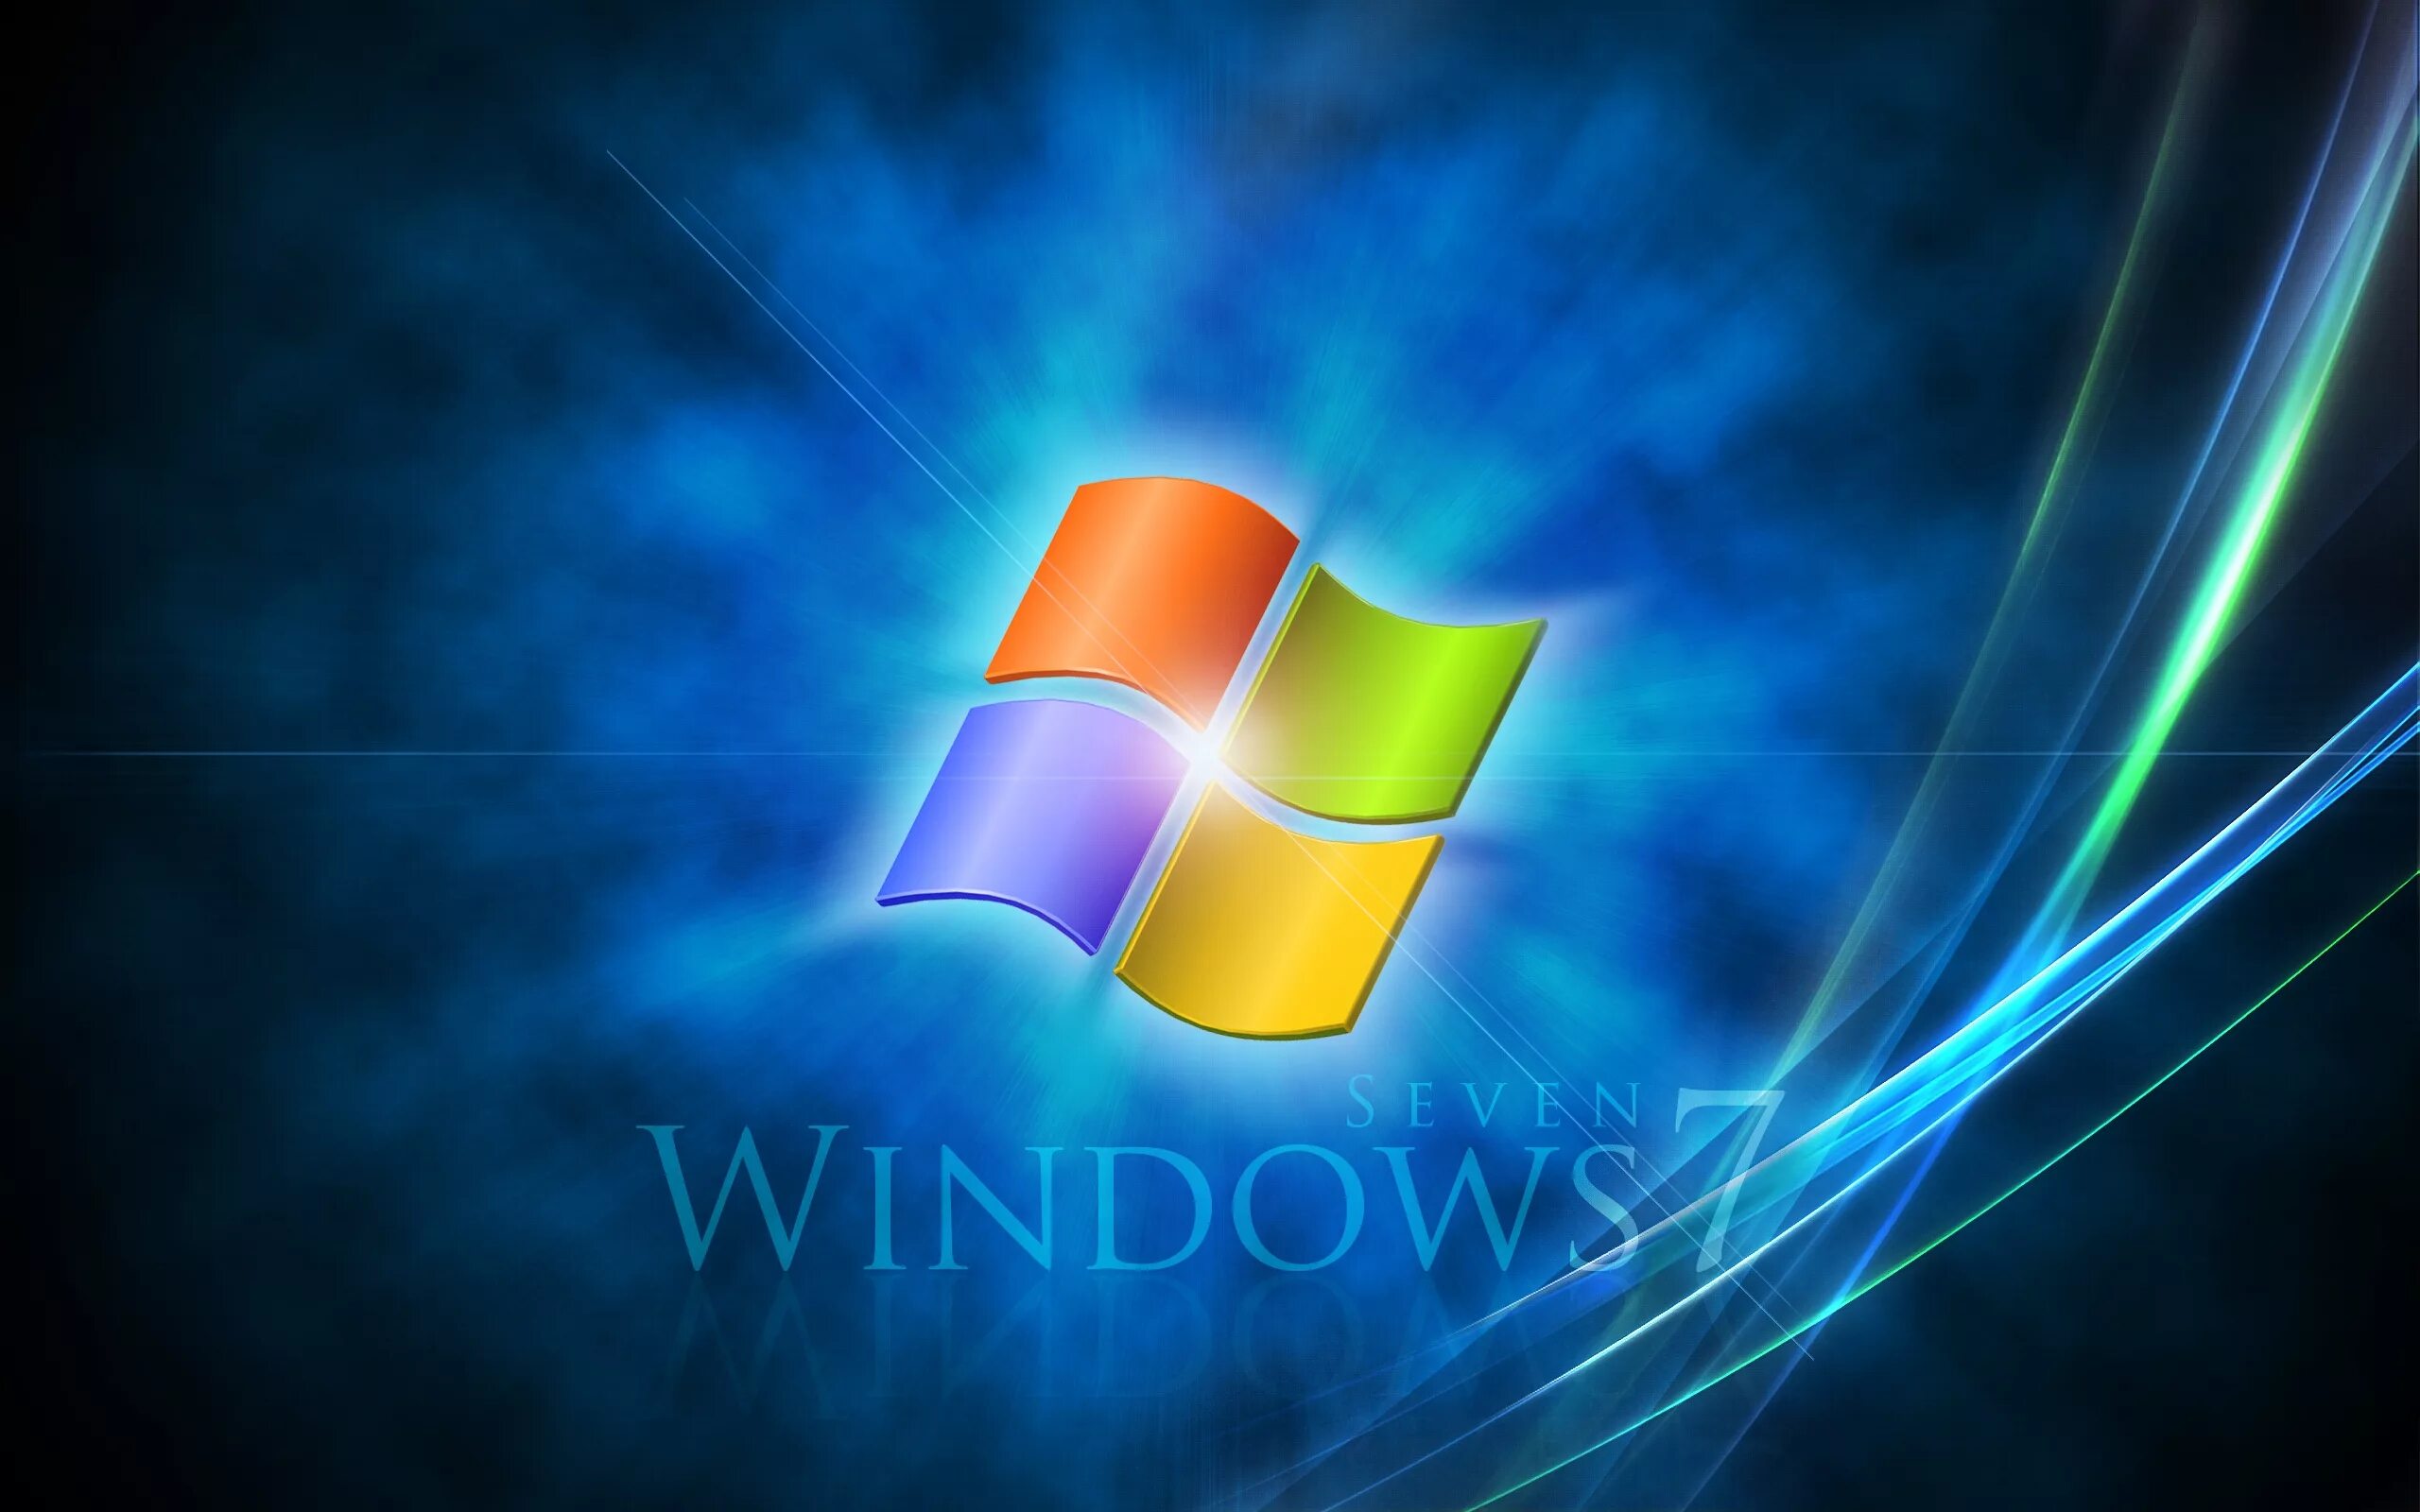 Виндовс 7. Windows 7 рабочий стол. Логотип Windows. Заставка виндовс. Windows 7 life